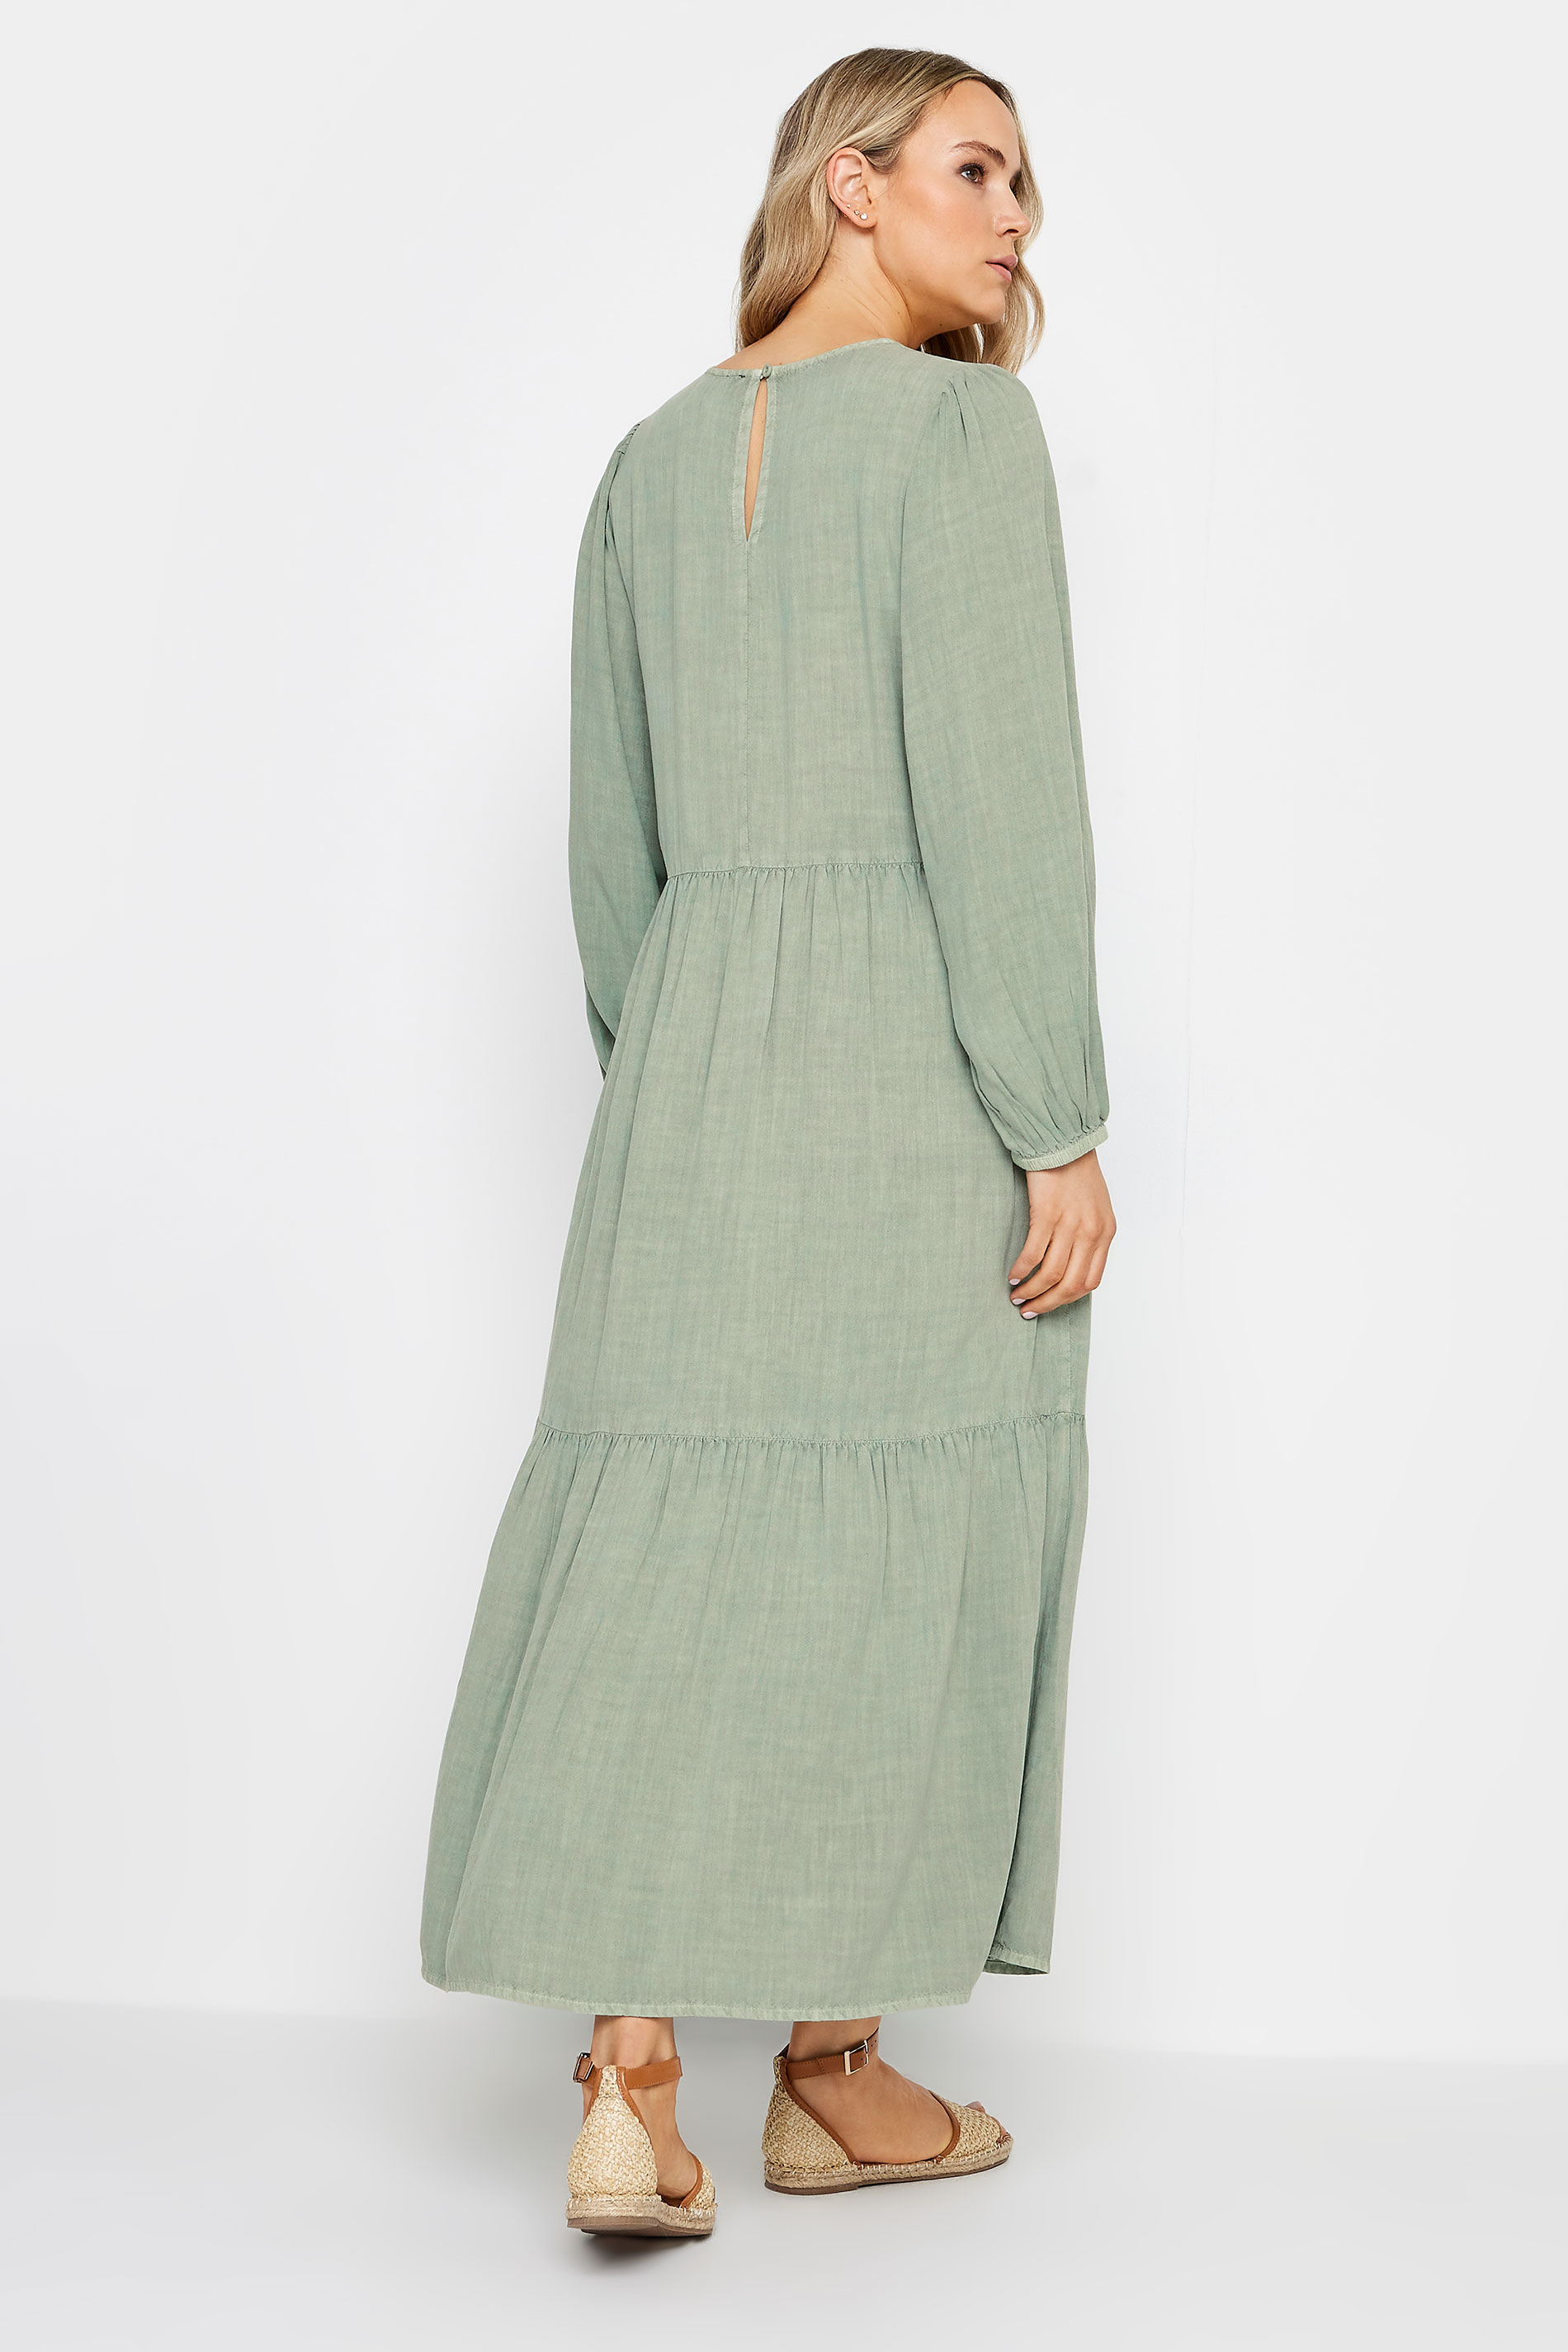 LTS Tall Womens Sage Green Acid Wash Tiered Maxi Dress | Long Tall Sally  3